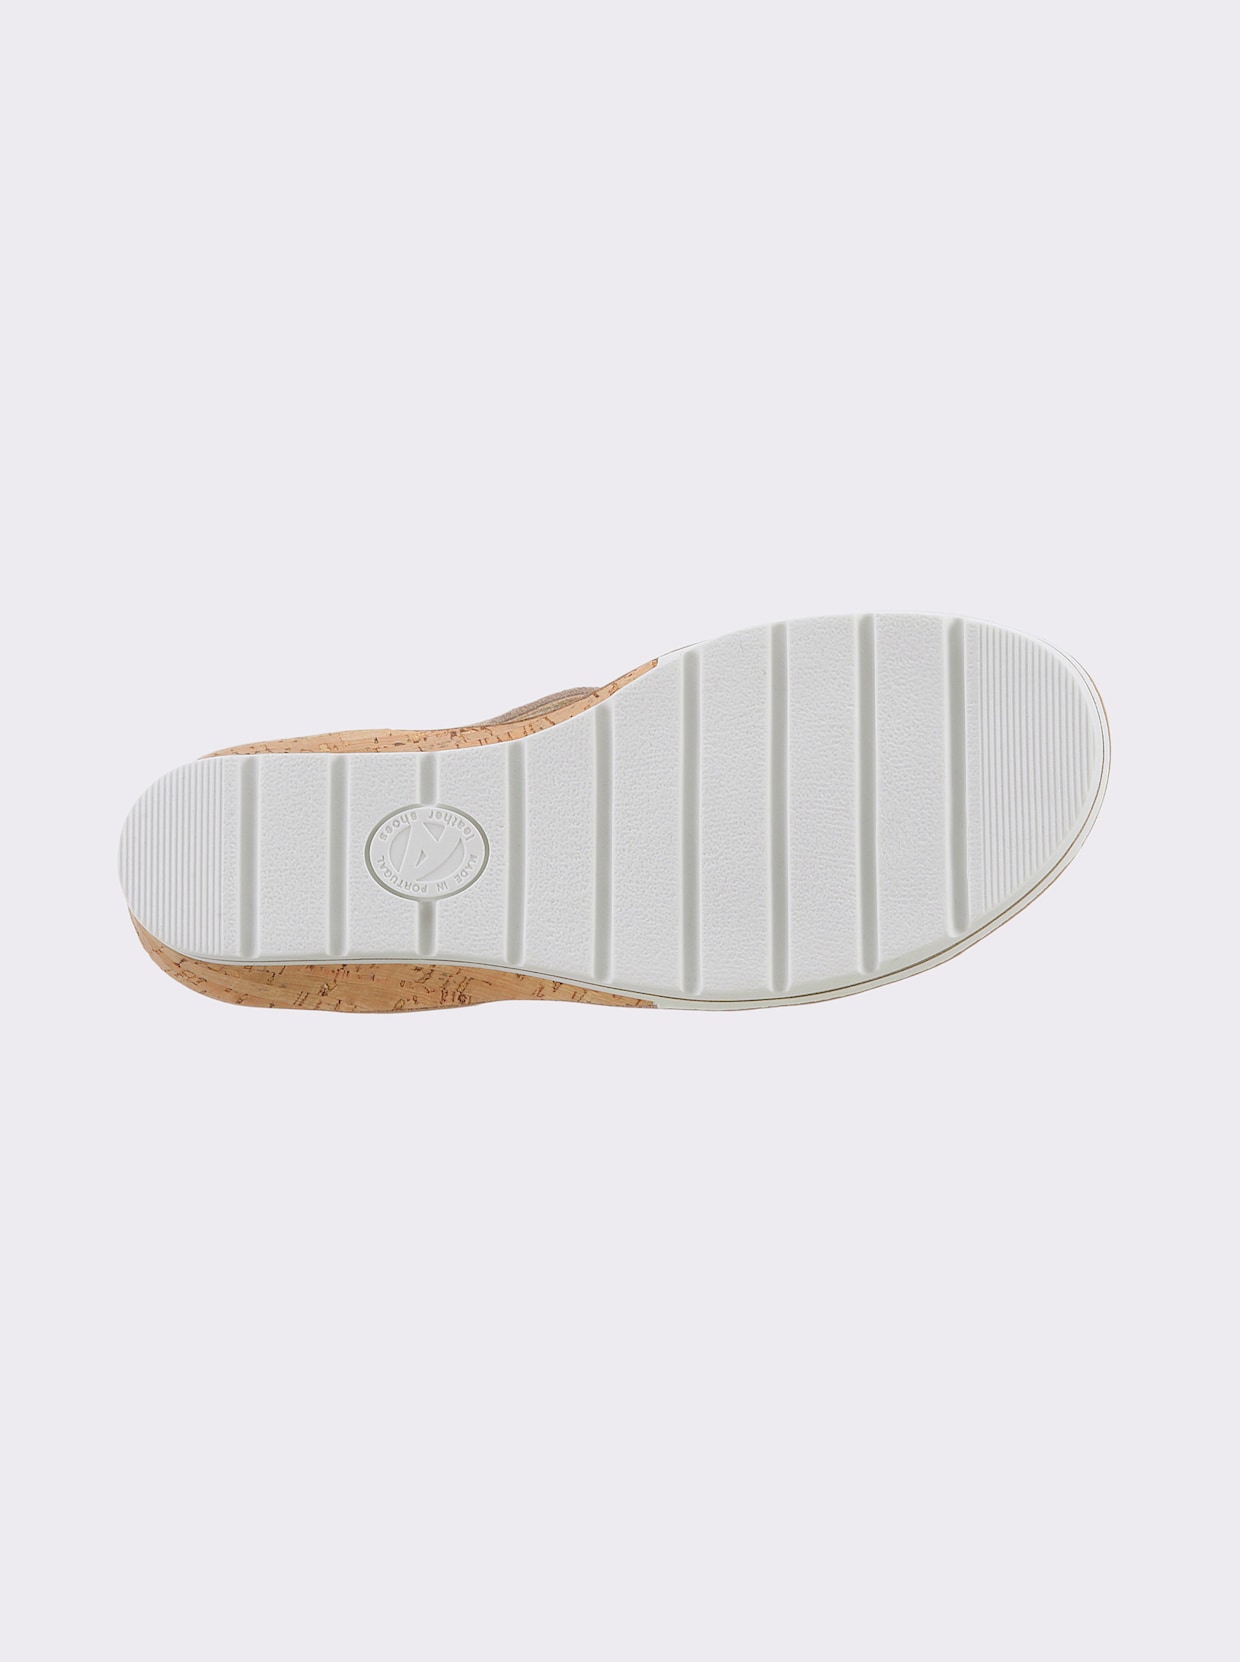 airsoft modern+ Sandalette - beige